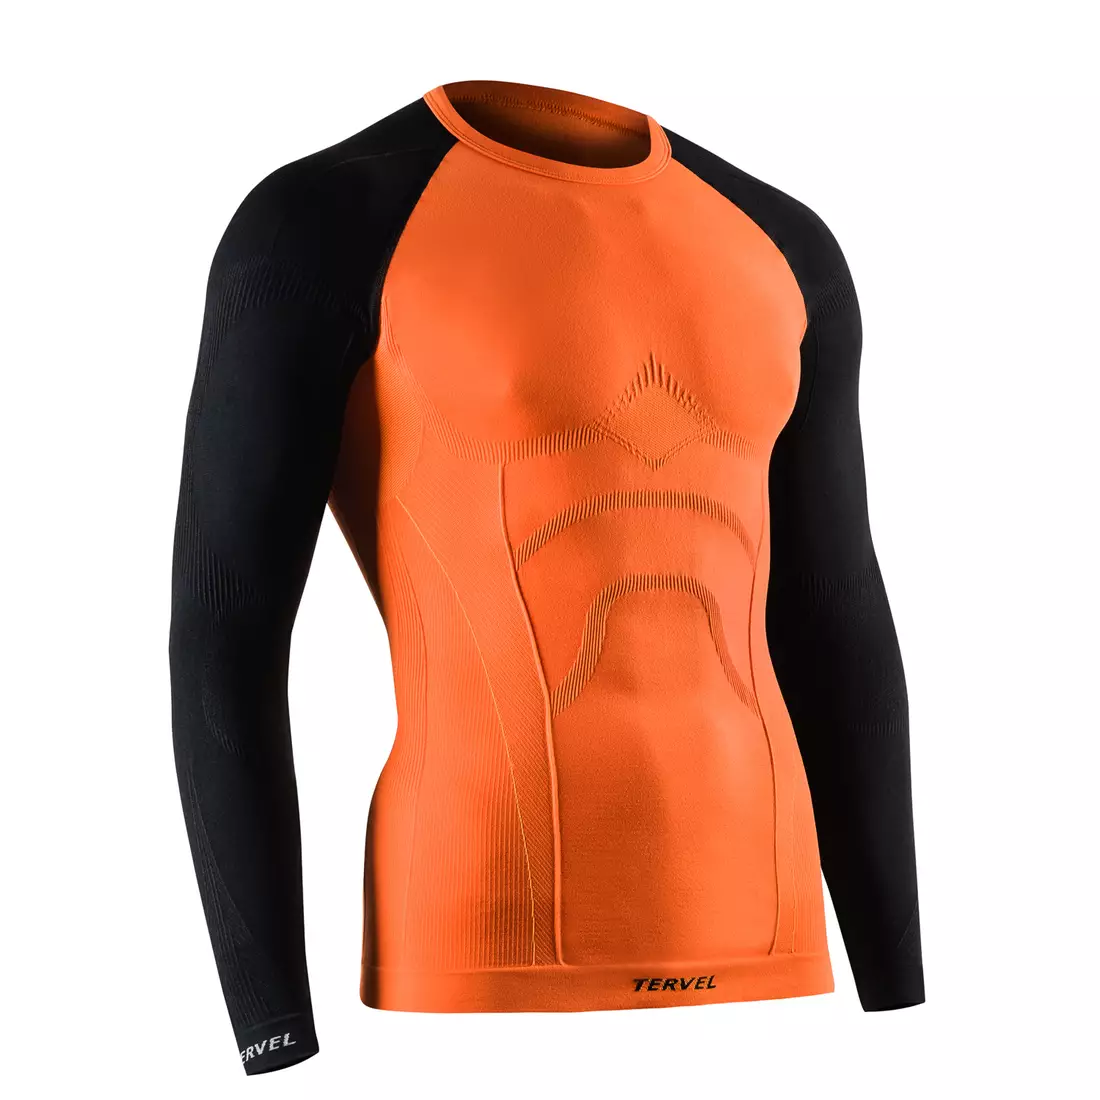 TERVEL COMFORTLINE 1002 - pánske termo tričko, dlhý rukáv, farba: oranžovo-čierna